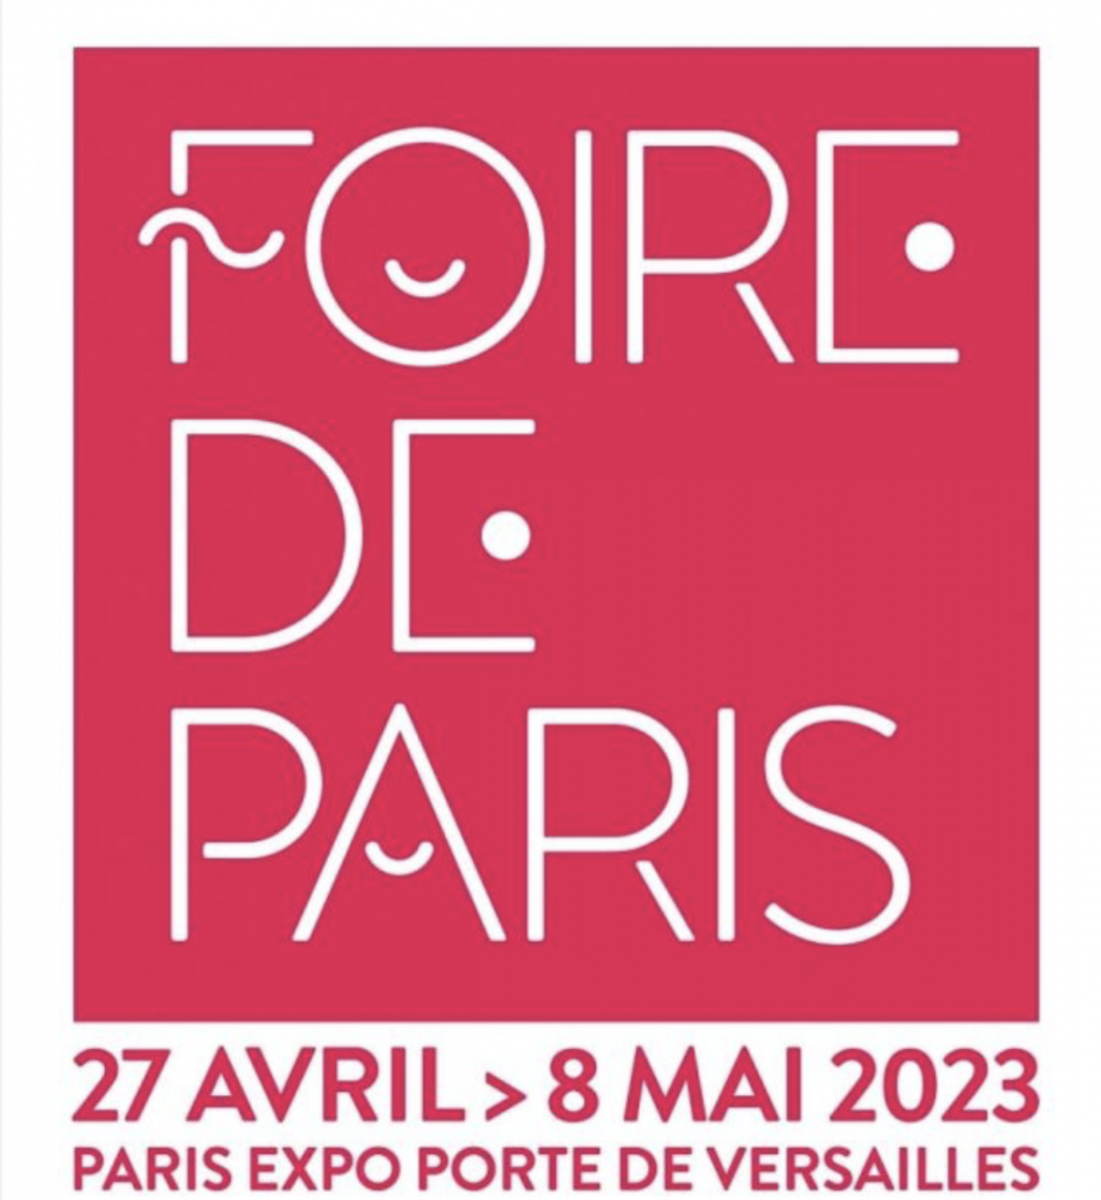 Retrouvez nous sur la foire de Paris du 27 Avril au 8 Mai 2023